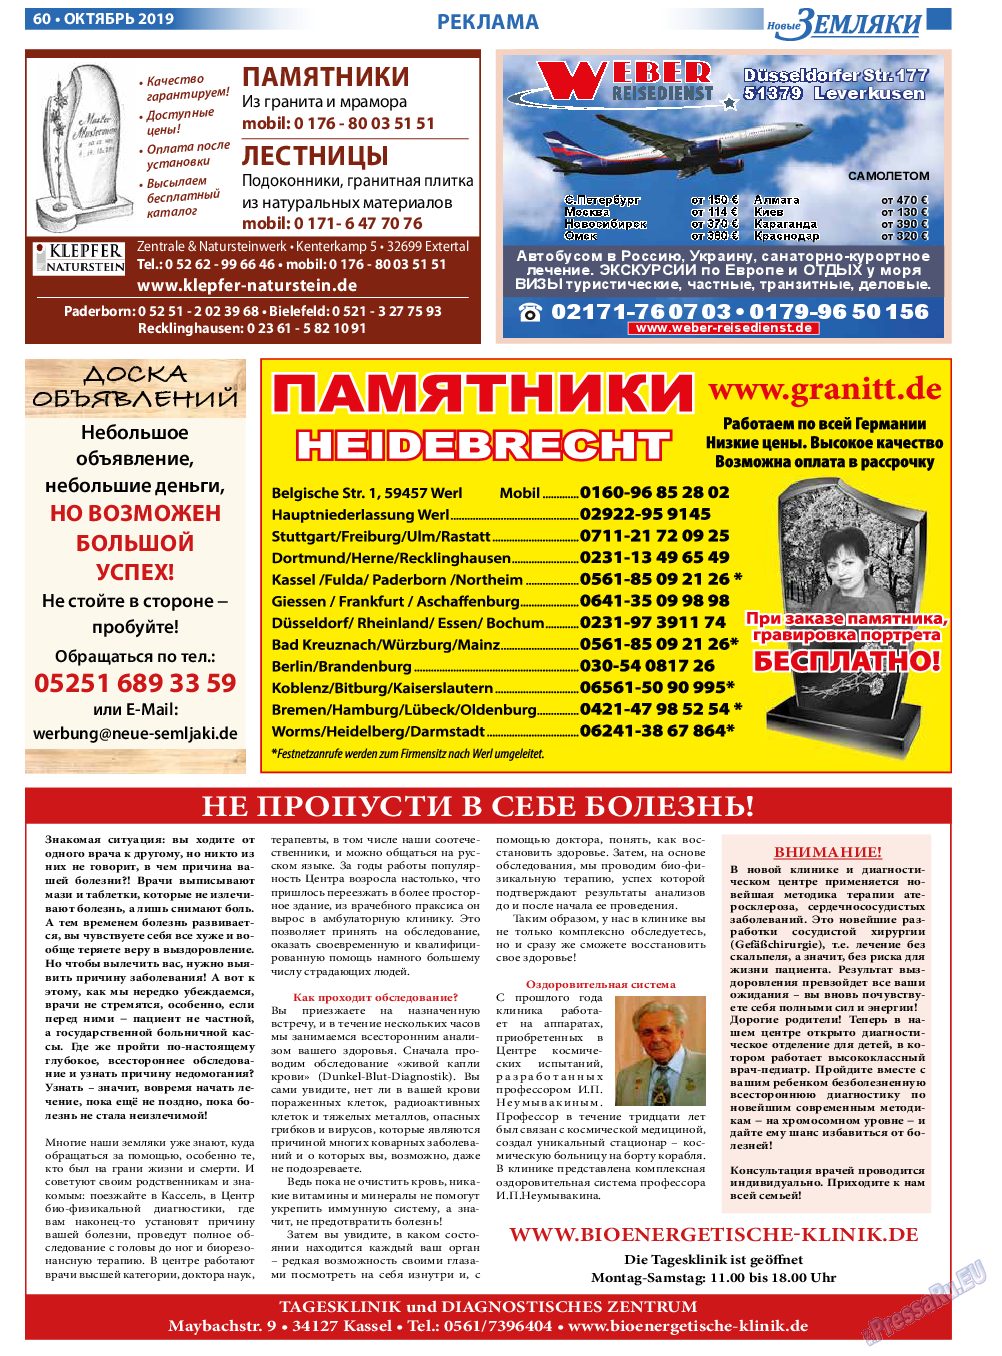 Новые Земляки, газета. 2019 №10 стр.60